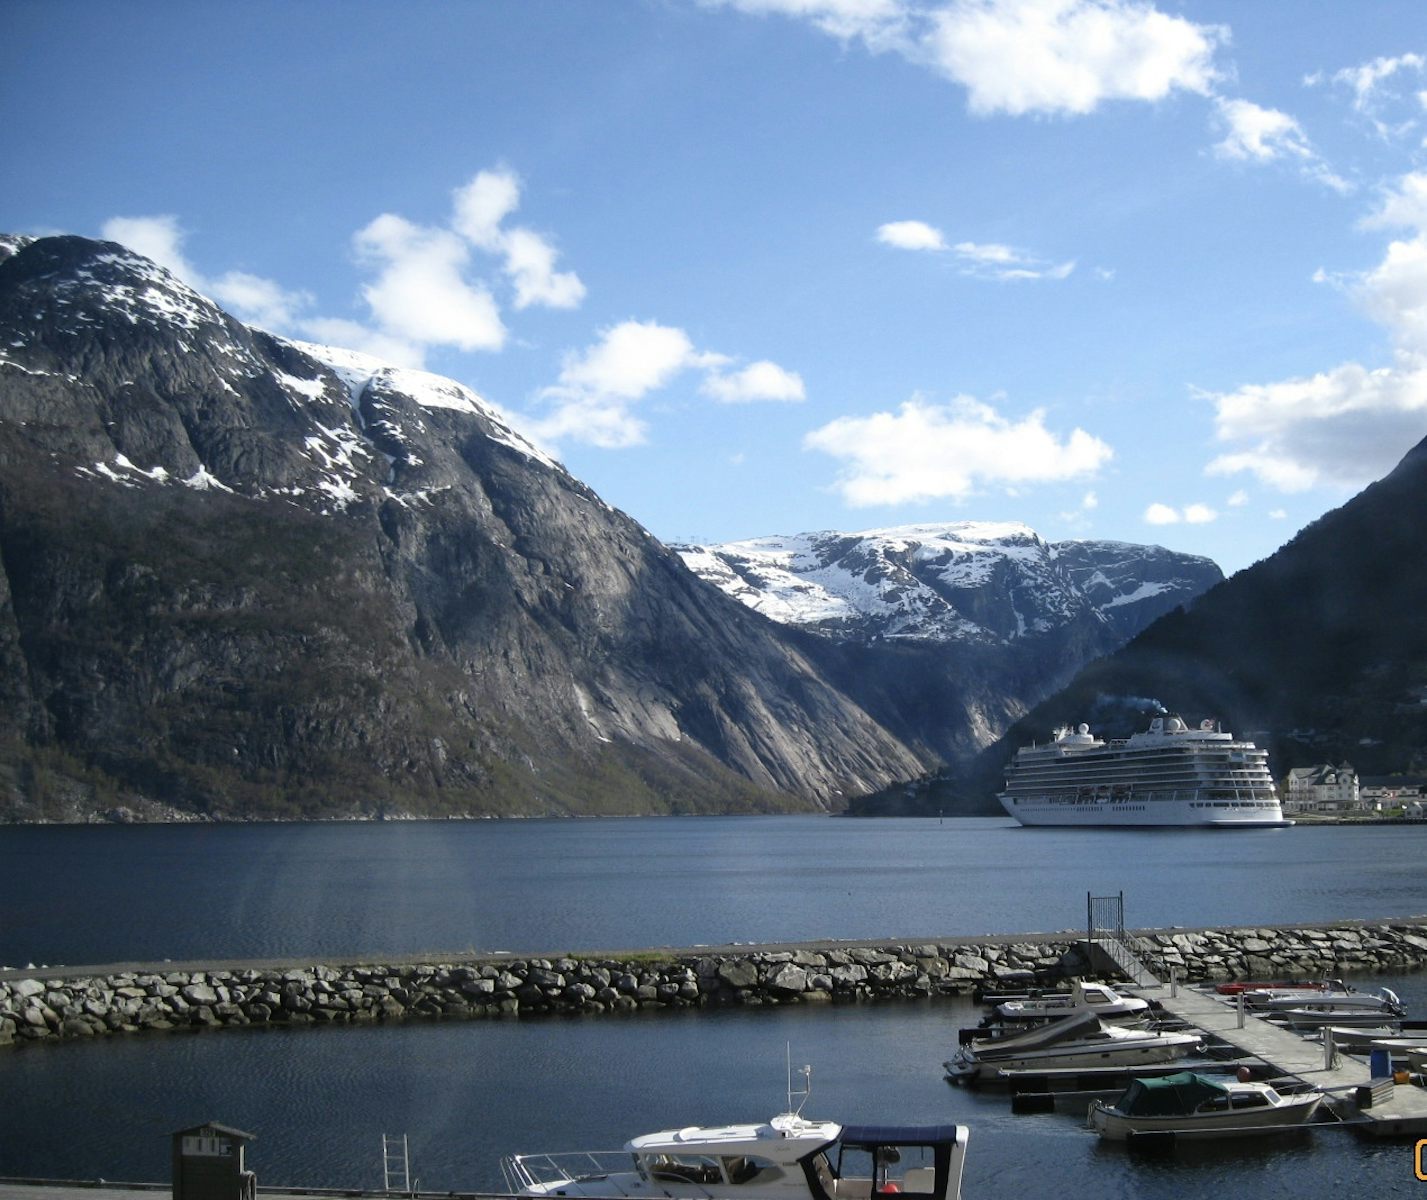 The Viking Sky docked in Eidfjord, Norway